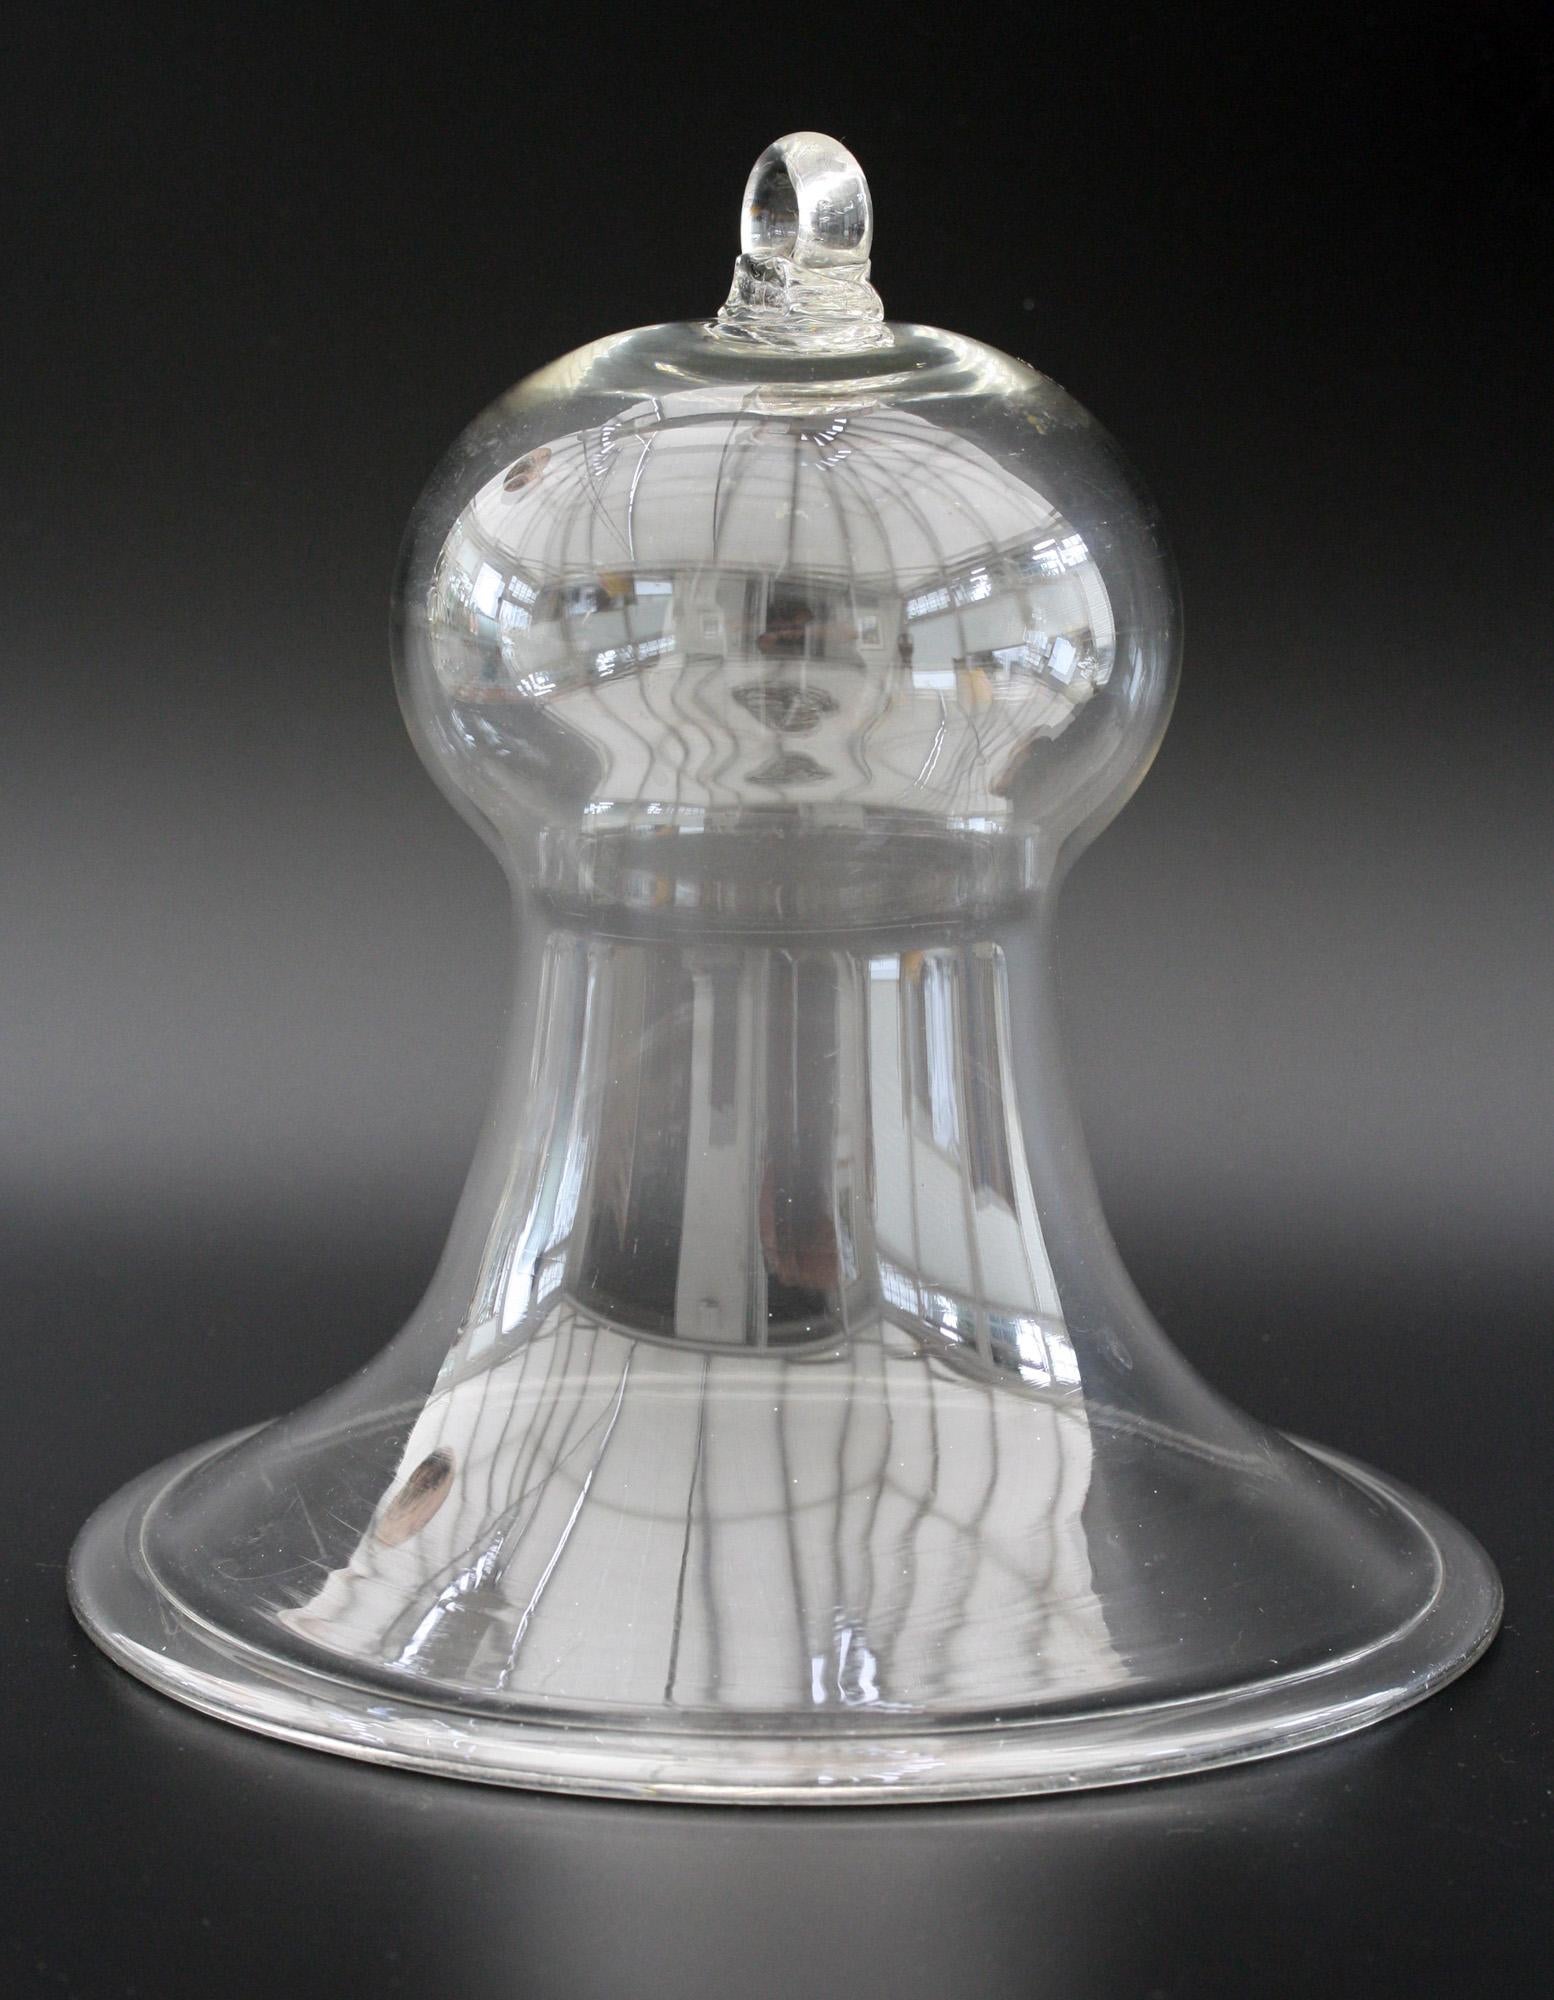 Une belle cloche à fumée en verre clair du début de l'ère victorienne, datant probablement d'environ 1850. Utilisée pour capturer la fumée des lampes à huile, la cloche était suspendue au plafond au-dessus de la lampe à huile, ce qui empêchait la